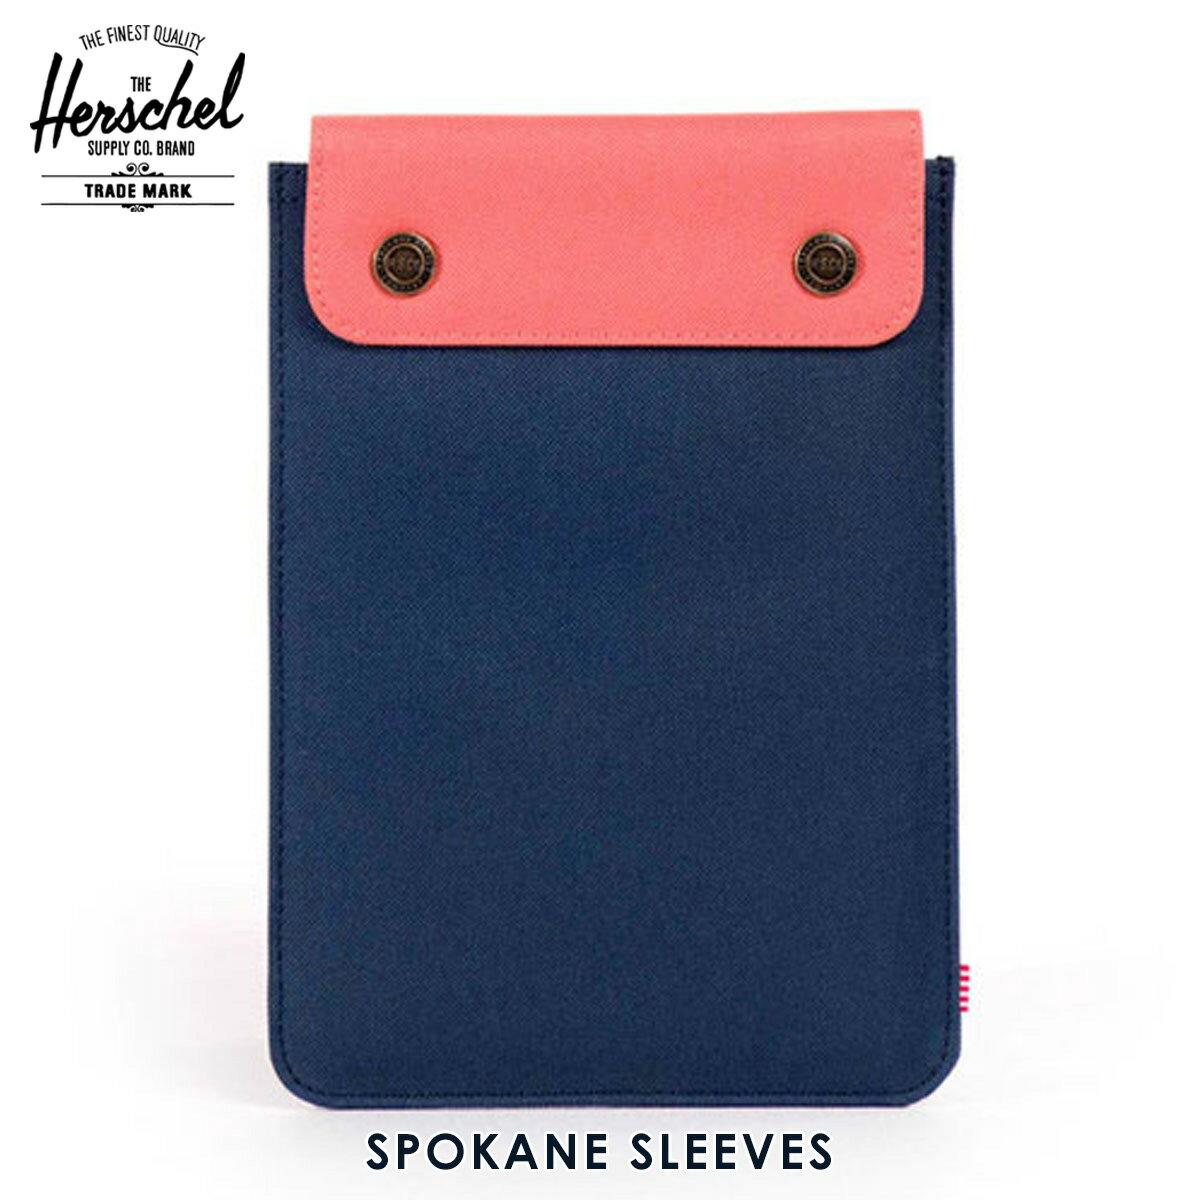 ハーシェル タブレットケース 正規販売店 Herschel Supply ハーシェルサプライ iPad Mini ケース Spokane Sleeve for iPad Mini Sleeves 10191-00610-OS Navy/Flamingo D15S25 父の日 プレゼント ラッピング